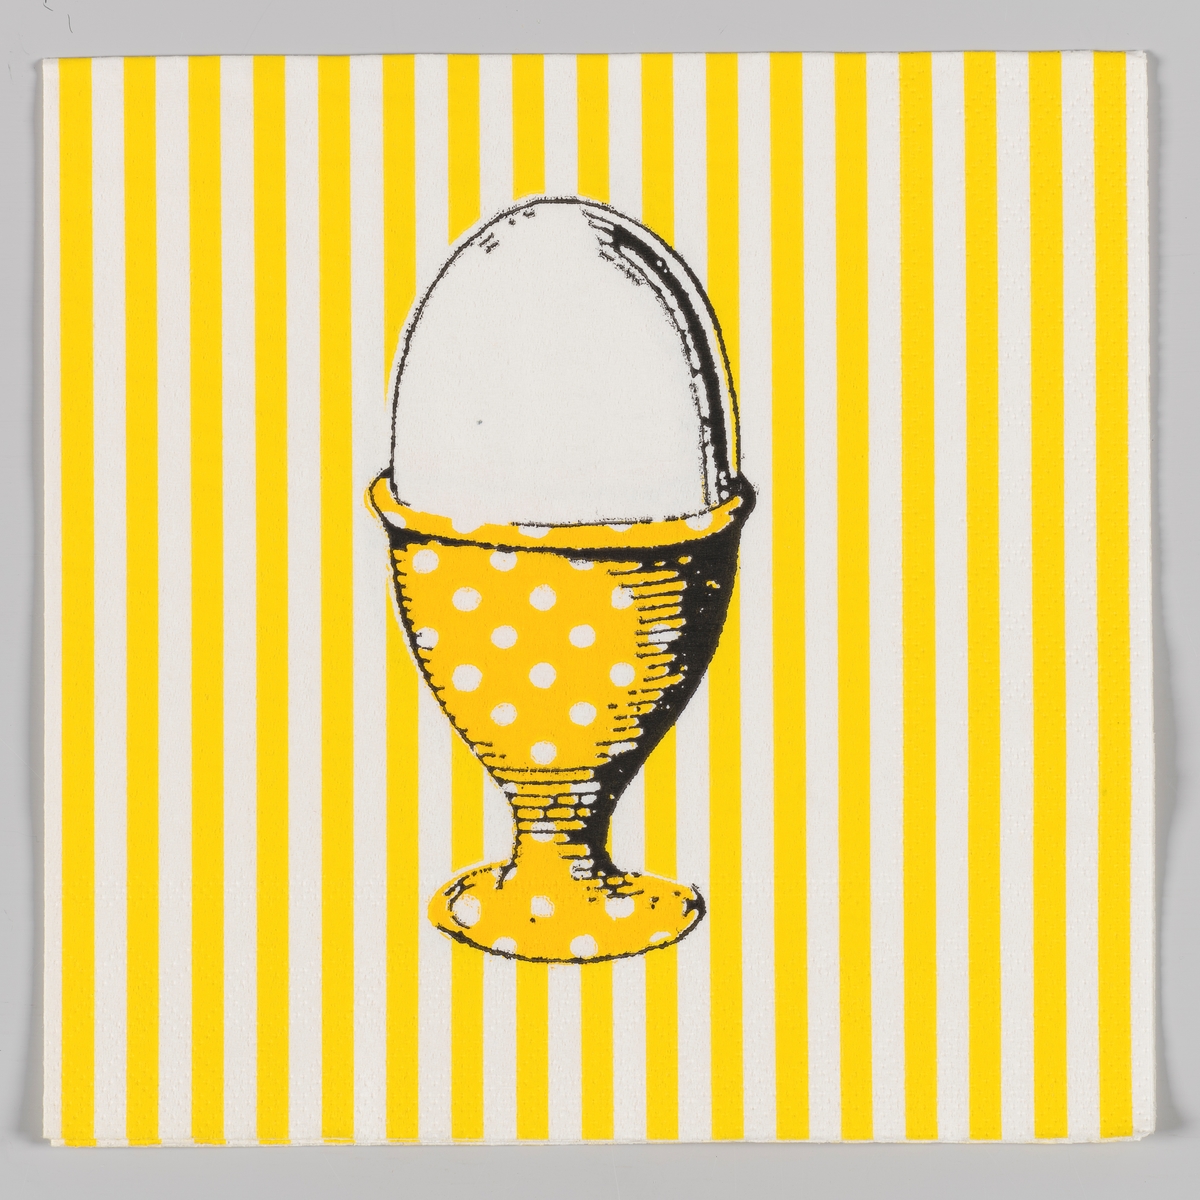 Et egg i et eggebeger utsmykket med hvite prikker på en gul og hvit stripet bakgrunn.